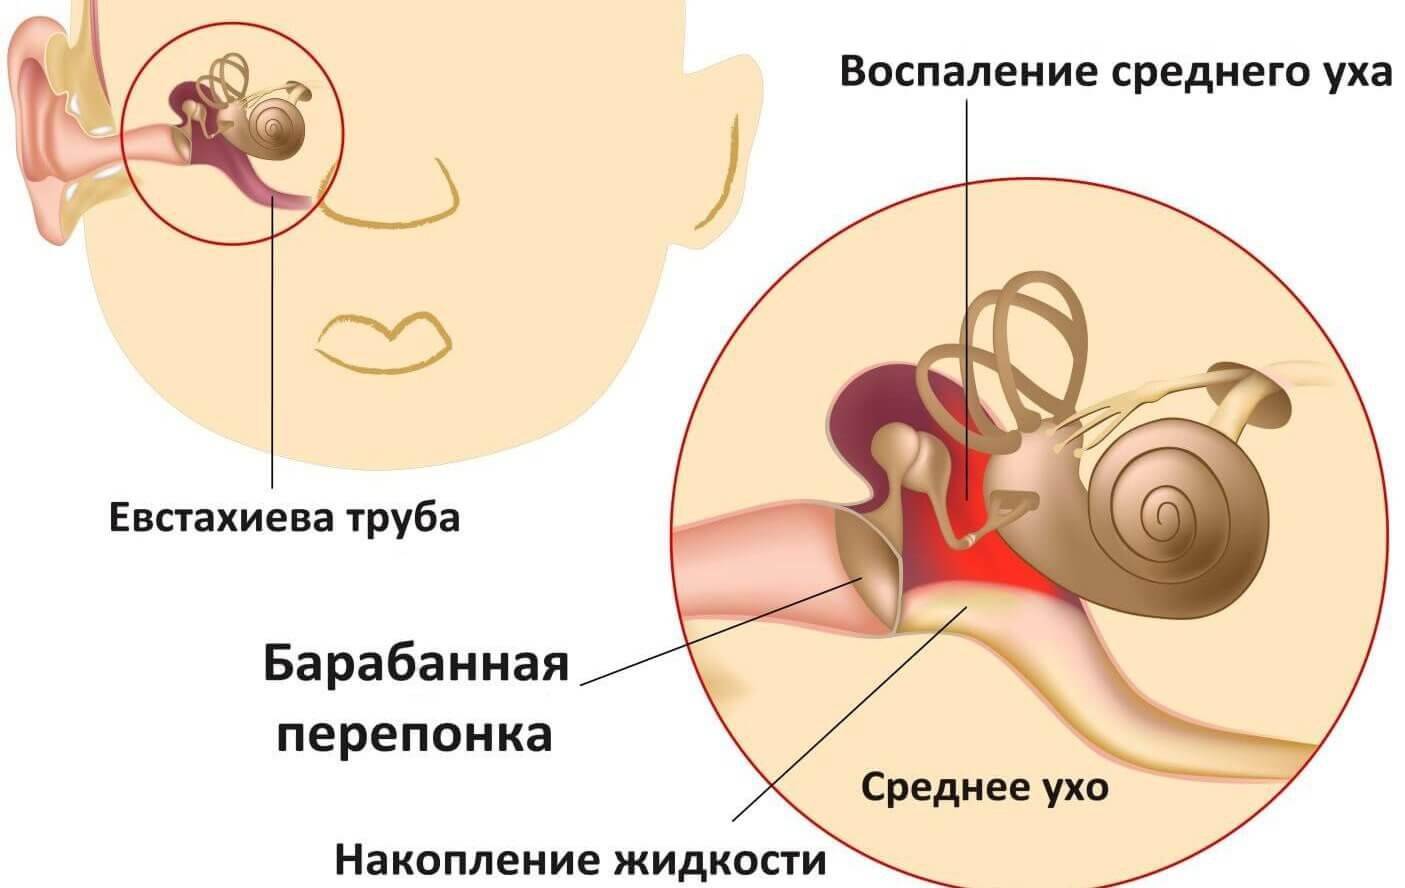 Воспаление среднего уха: развитие, симптомы, диагностика, лечение